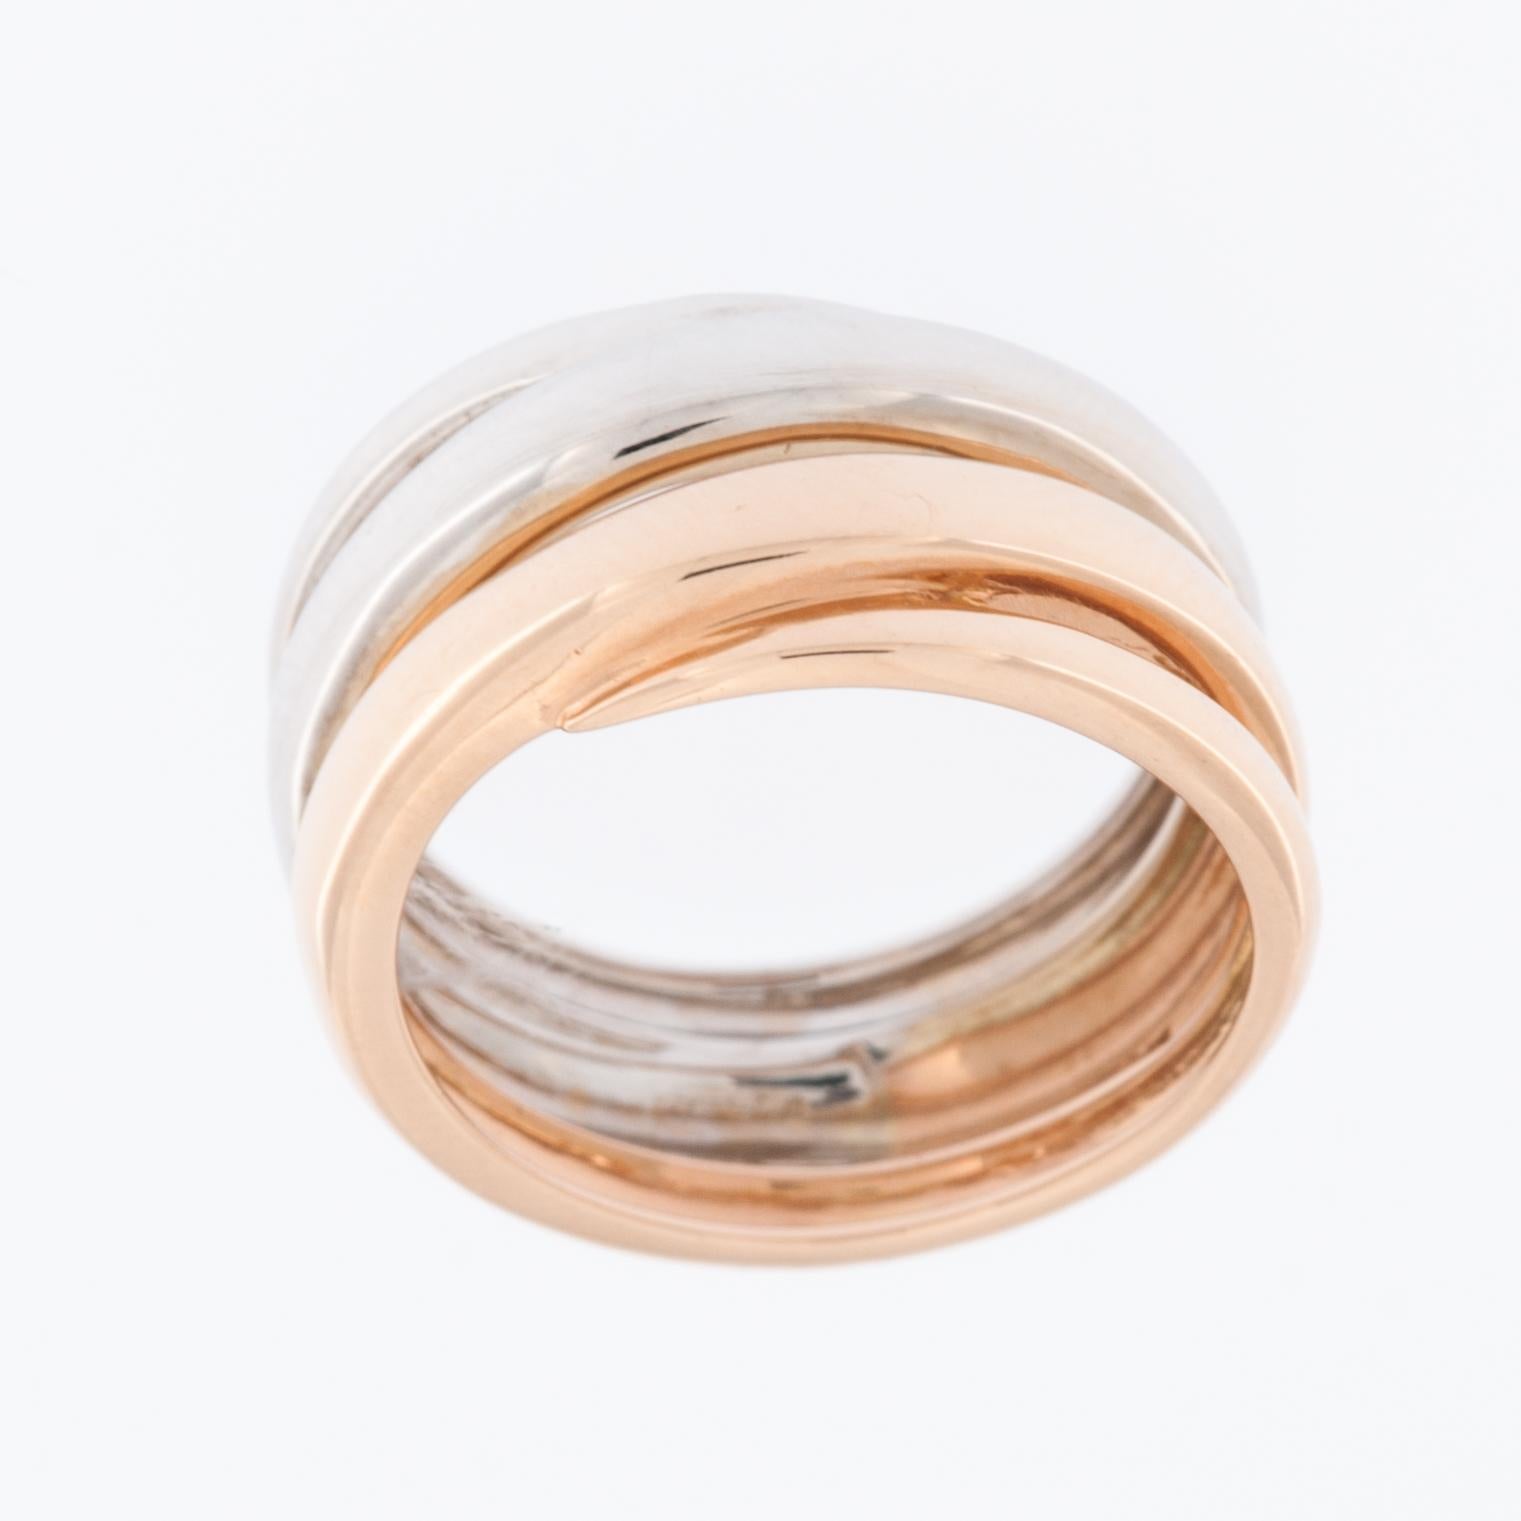 La bague Spiral Design/One en or blanc et rose 18kt est un superbe bijou qui allie élégance et sophistication à un design unique et accrocheur. 

La bague est réalisée en or blanc 18 carats. Cet alliage d'or de haute qualité est connu pour sa